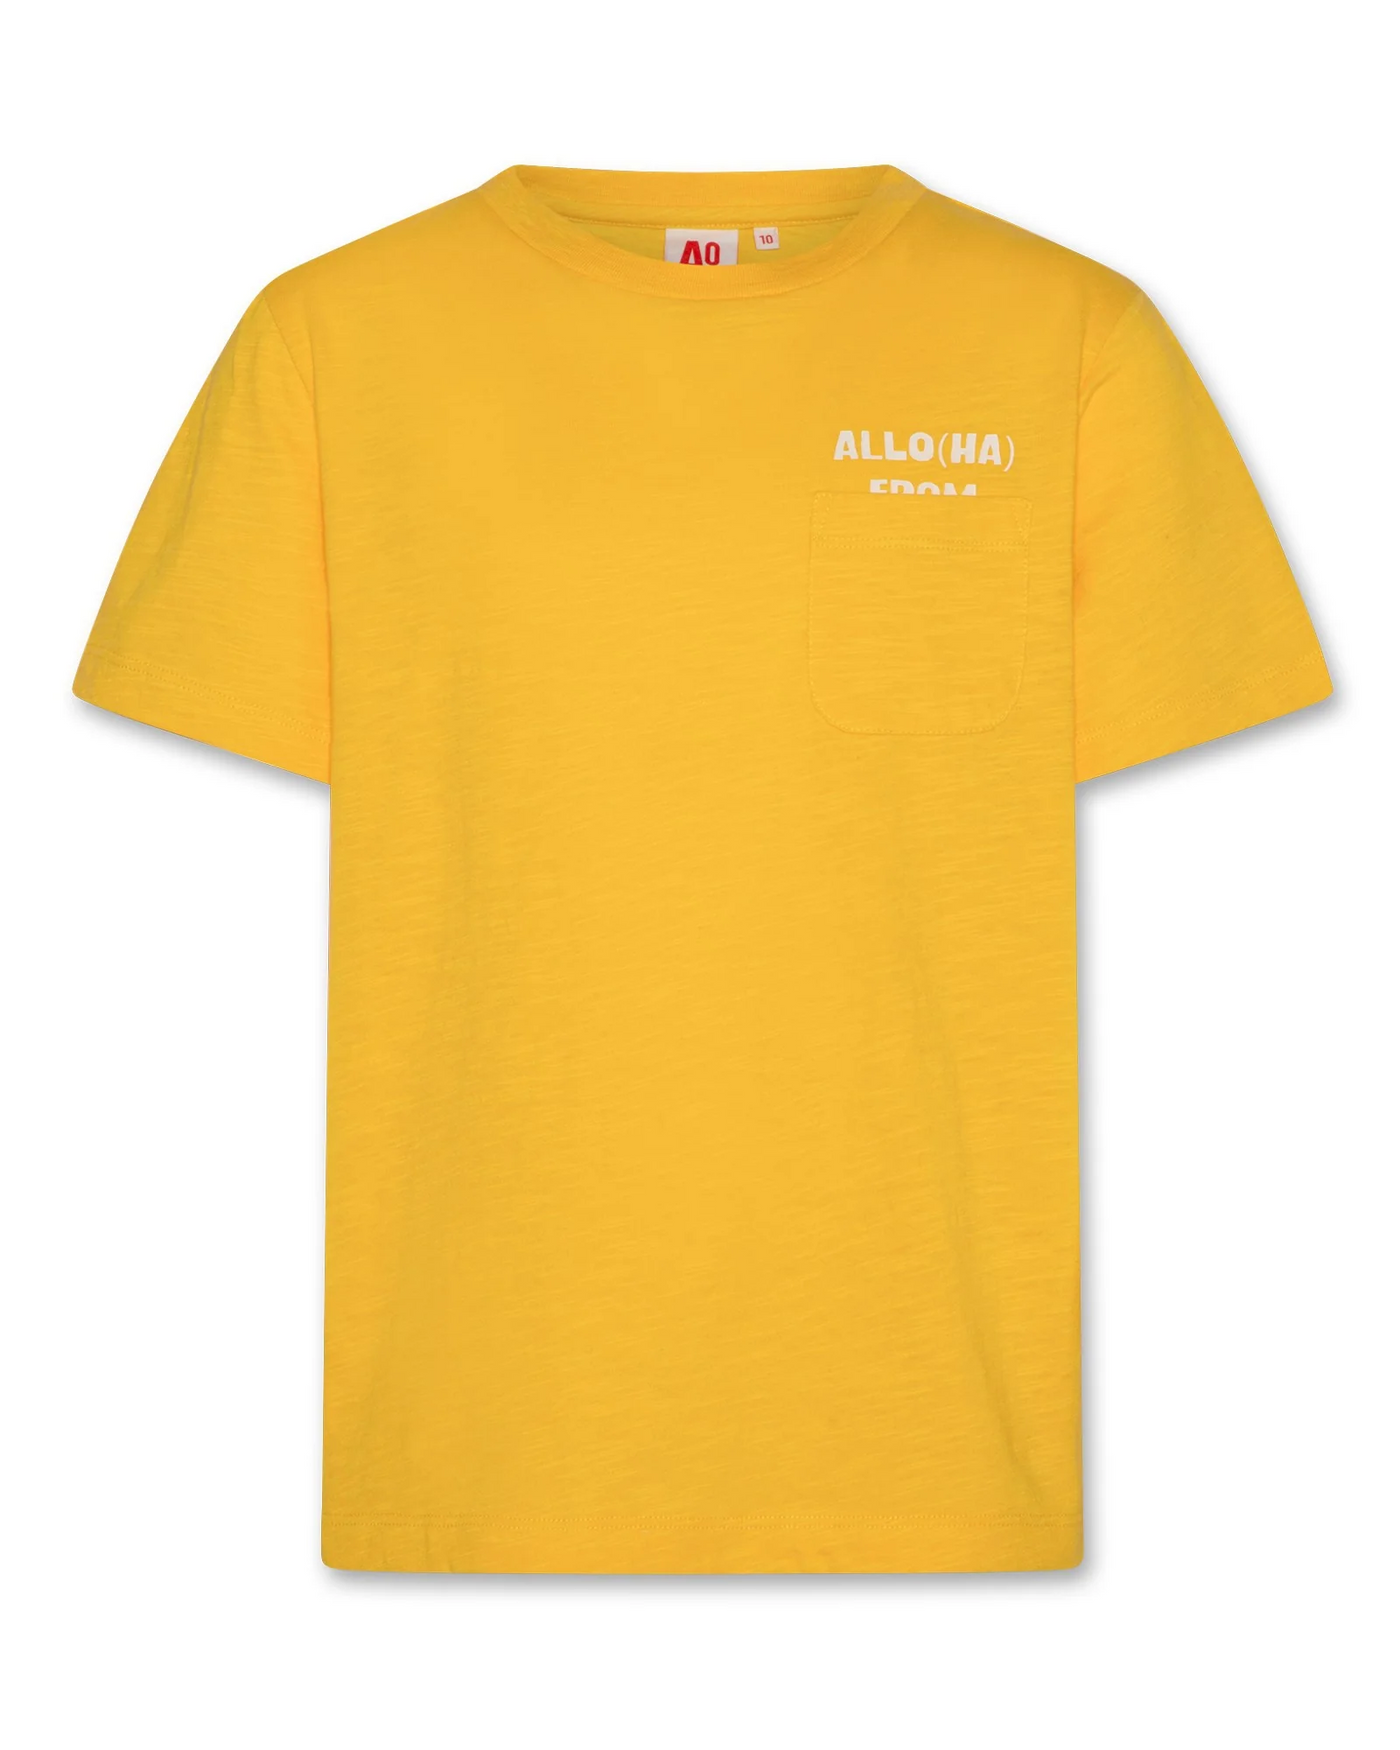 Mick T-Shirt Garment Dye